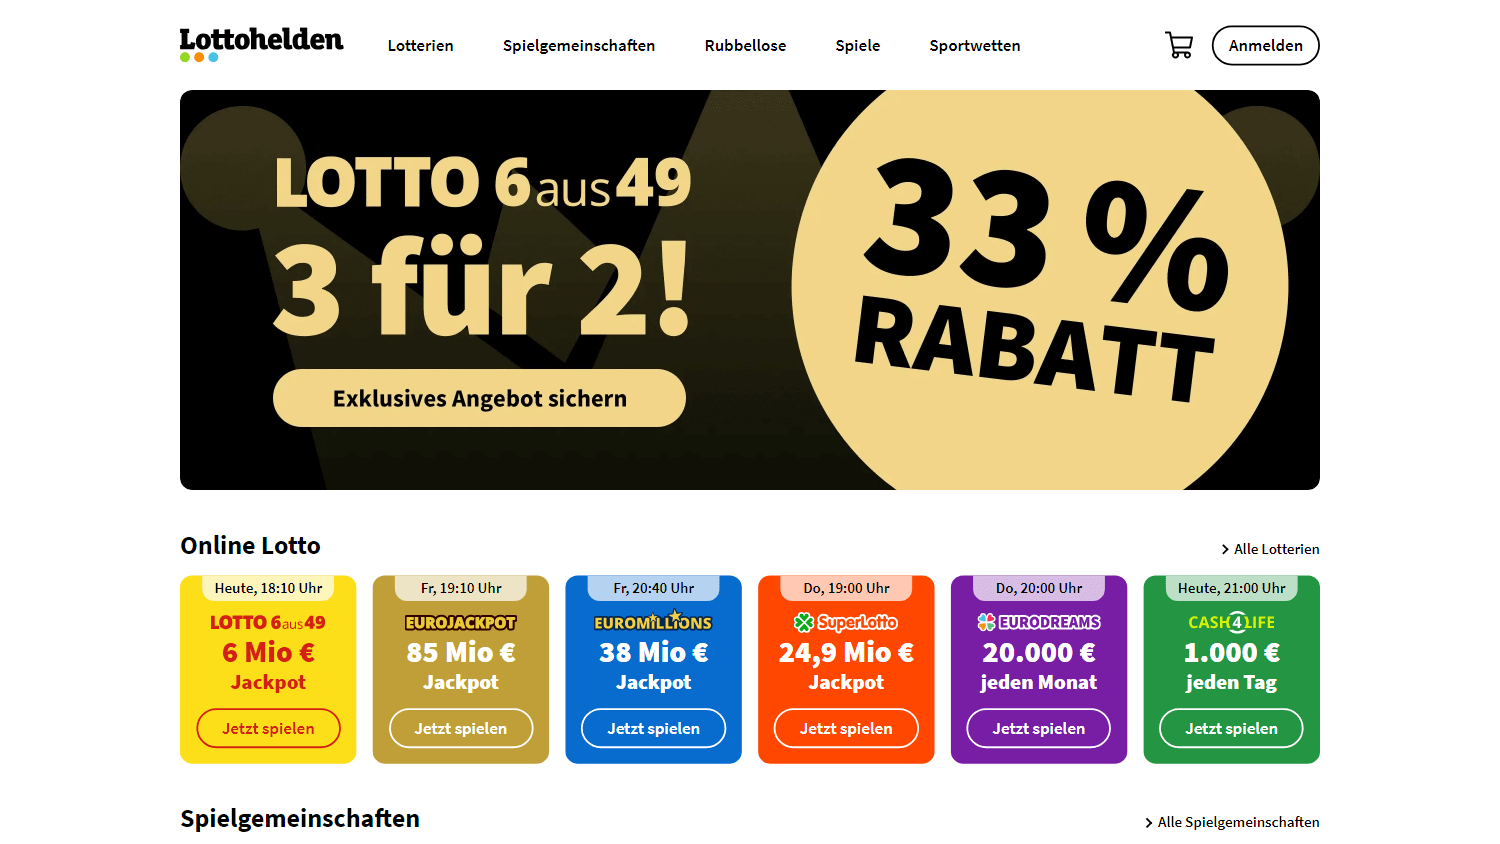 lottohelden_casino_homepage_desktop